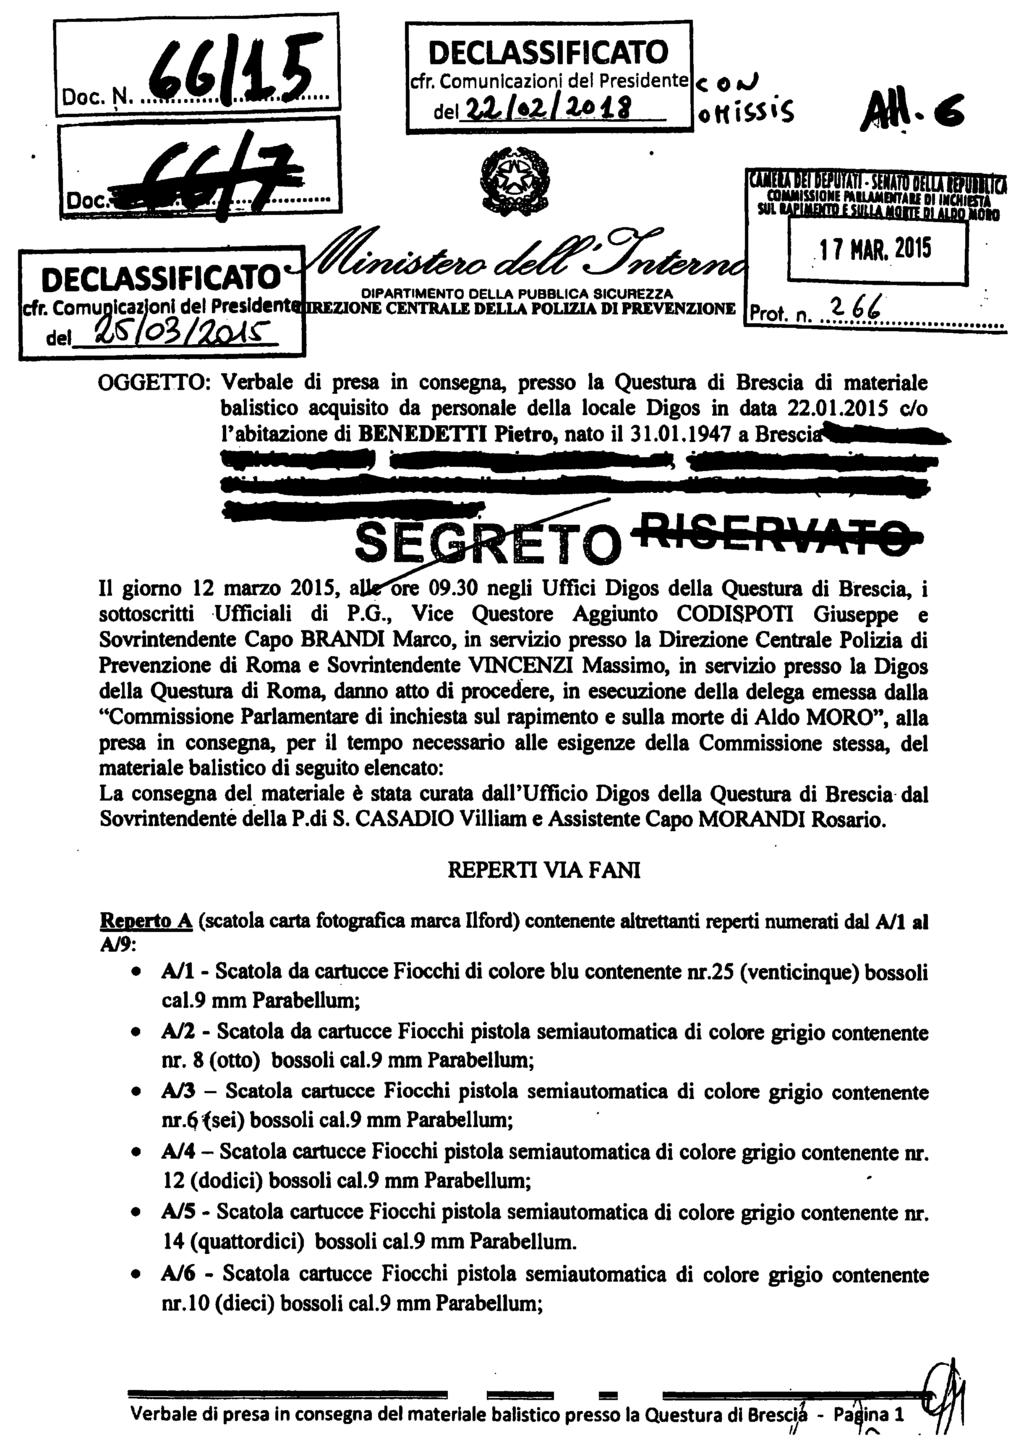 OGGETTO: Verbale di presa in consegna, presso la Questura di Brescia di materiale balistico acquisito da personale della locale Digos in data 22.01.